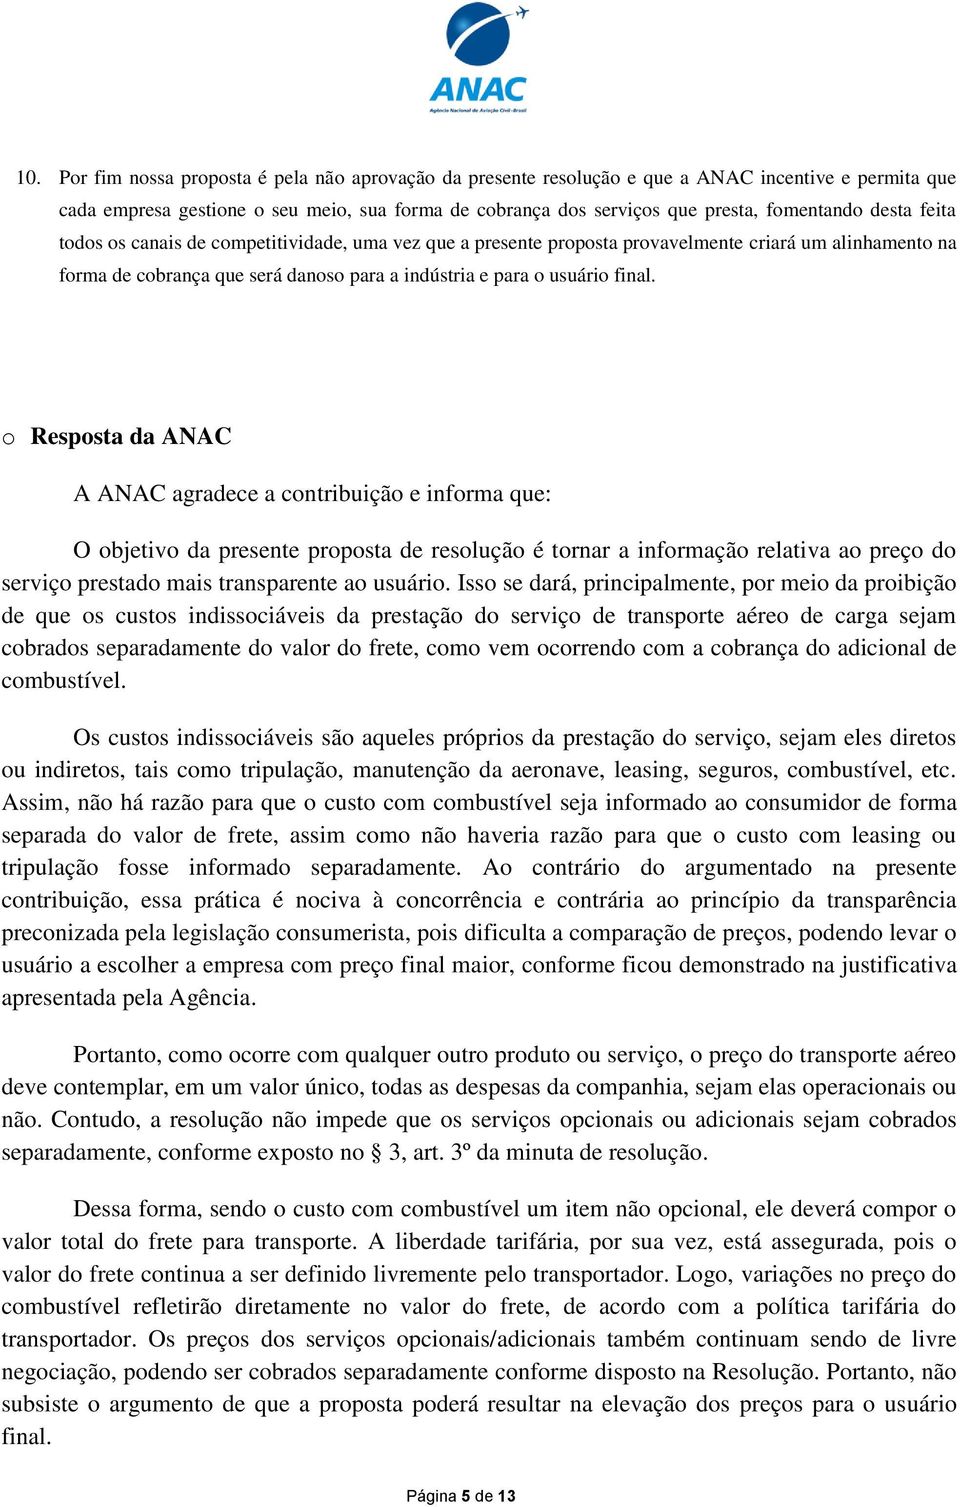 o Resposta da ANAC A ANAC agradece a contribuição e informa que: O objetivo da presente proposta de resolução é tornar a informação relativa ao preço do serviço prestado mais transparente ao usuário.